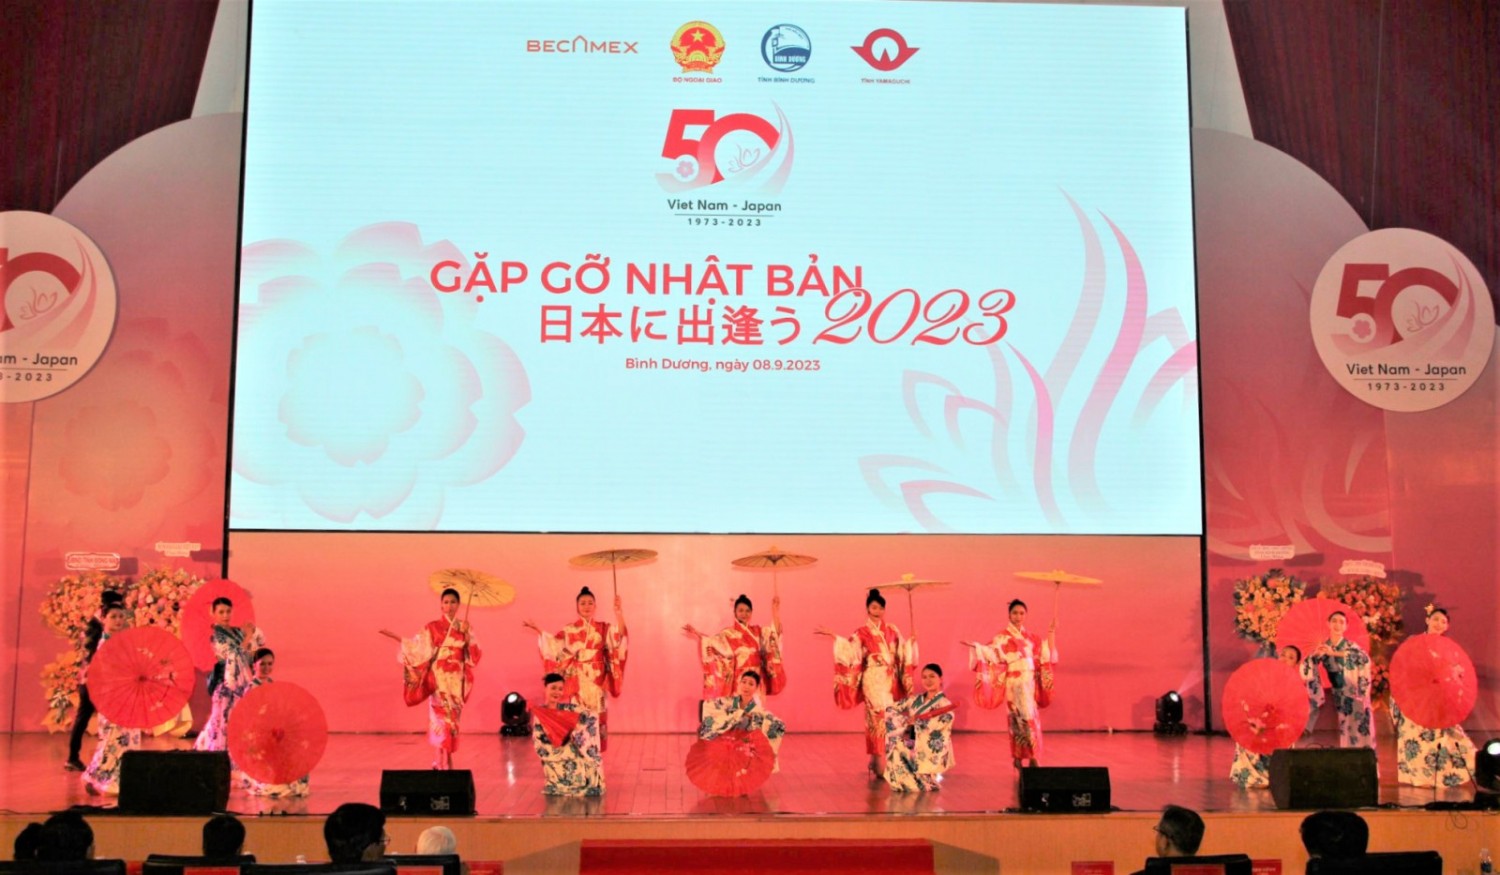 Mời tham dự Hội nghị "Gặp gỡ Nhật Bản" 2023 tại Hà Nội